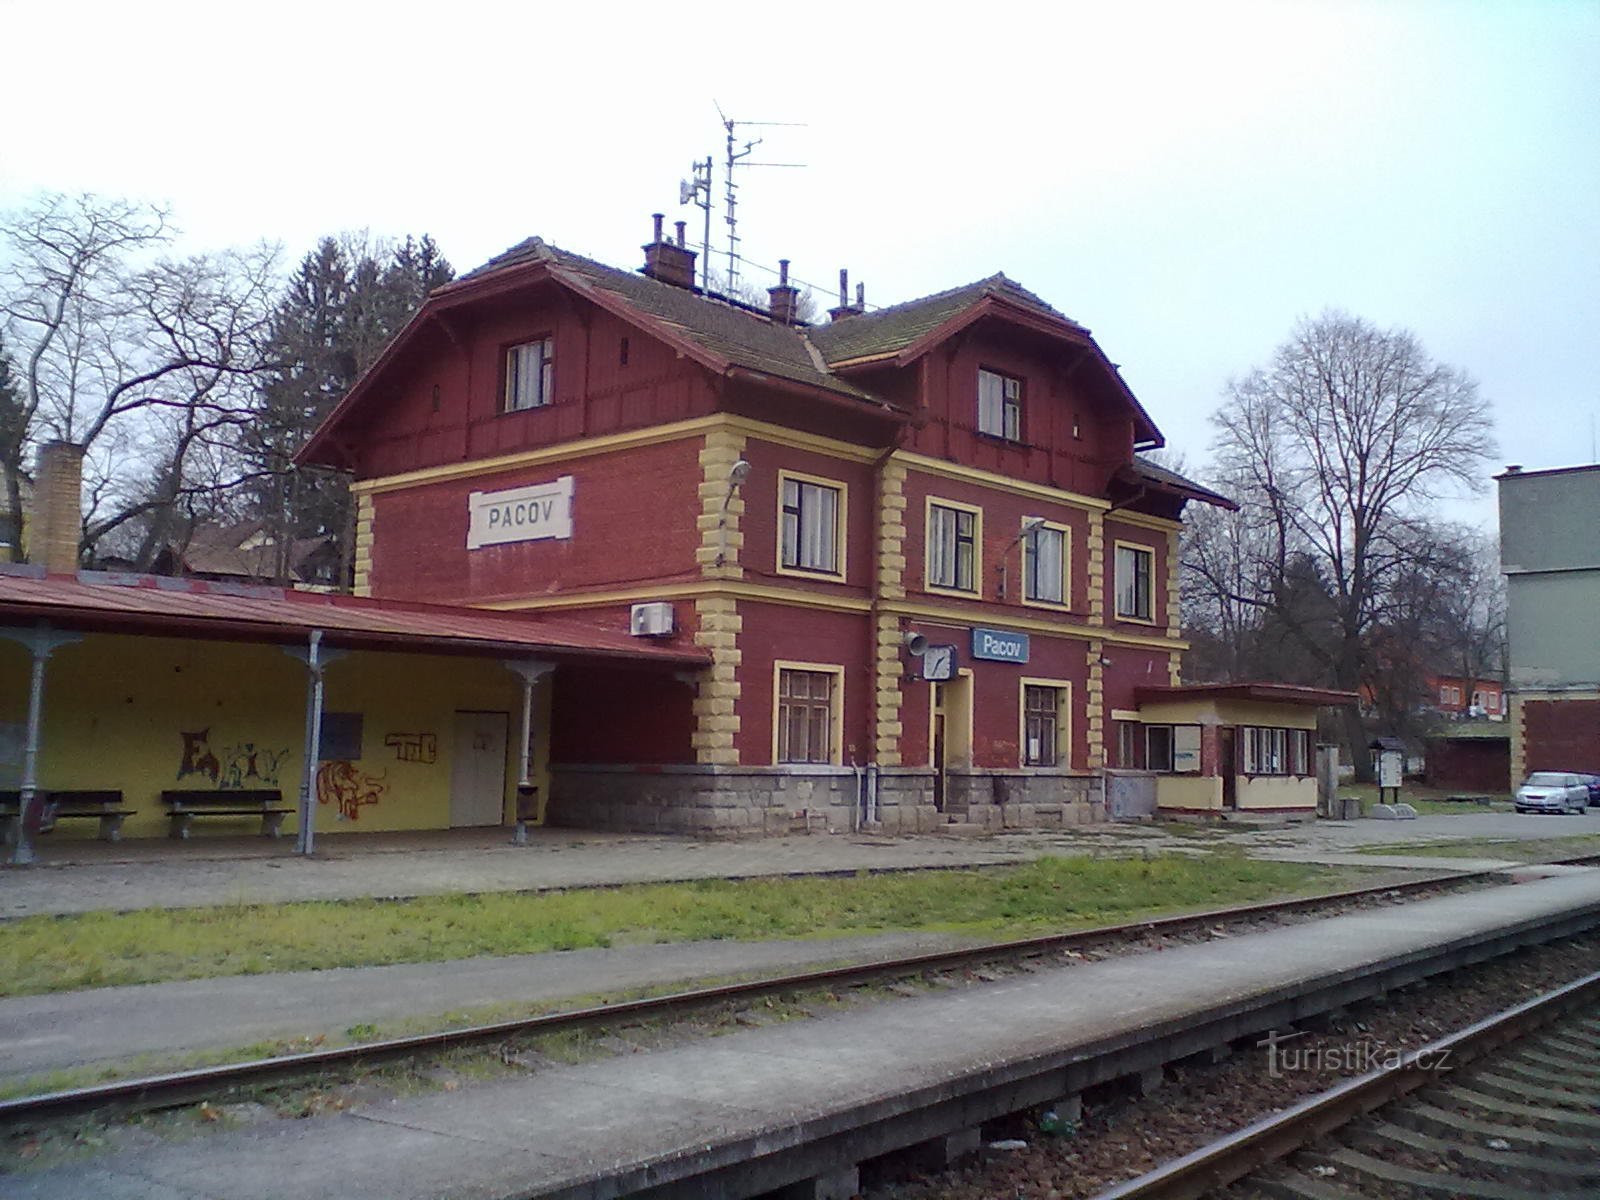 1. estação ferroviária de Pacov - ponto inicial e final da peregrinação.